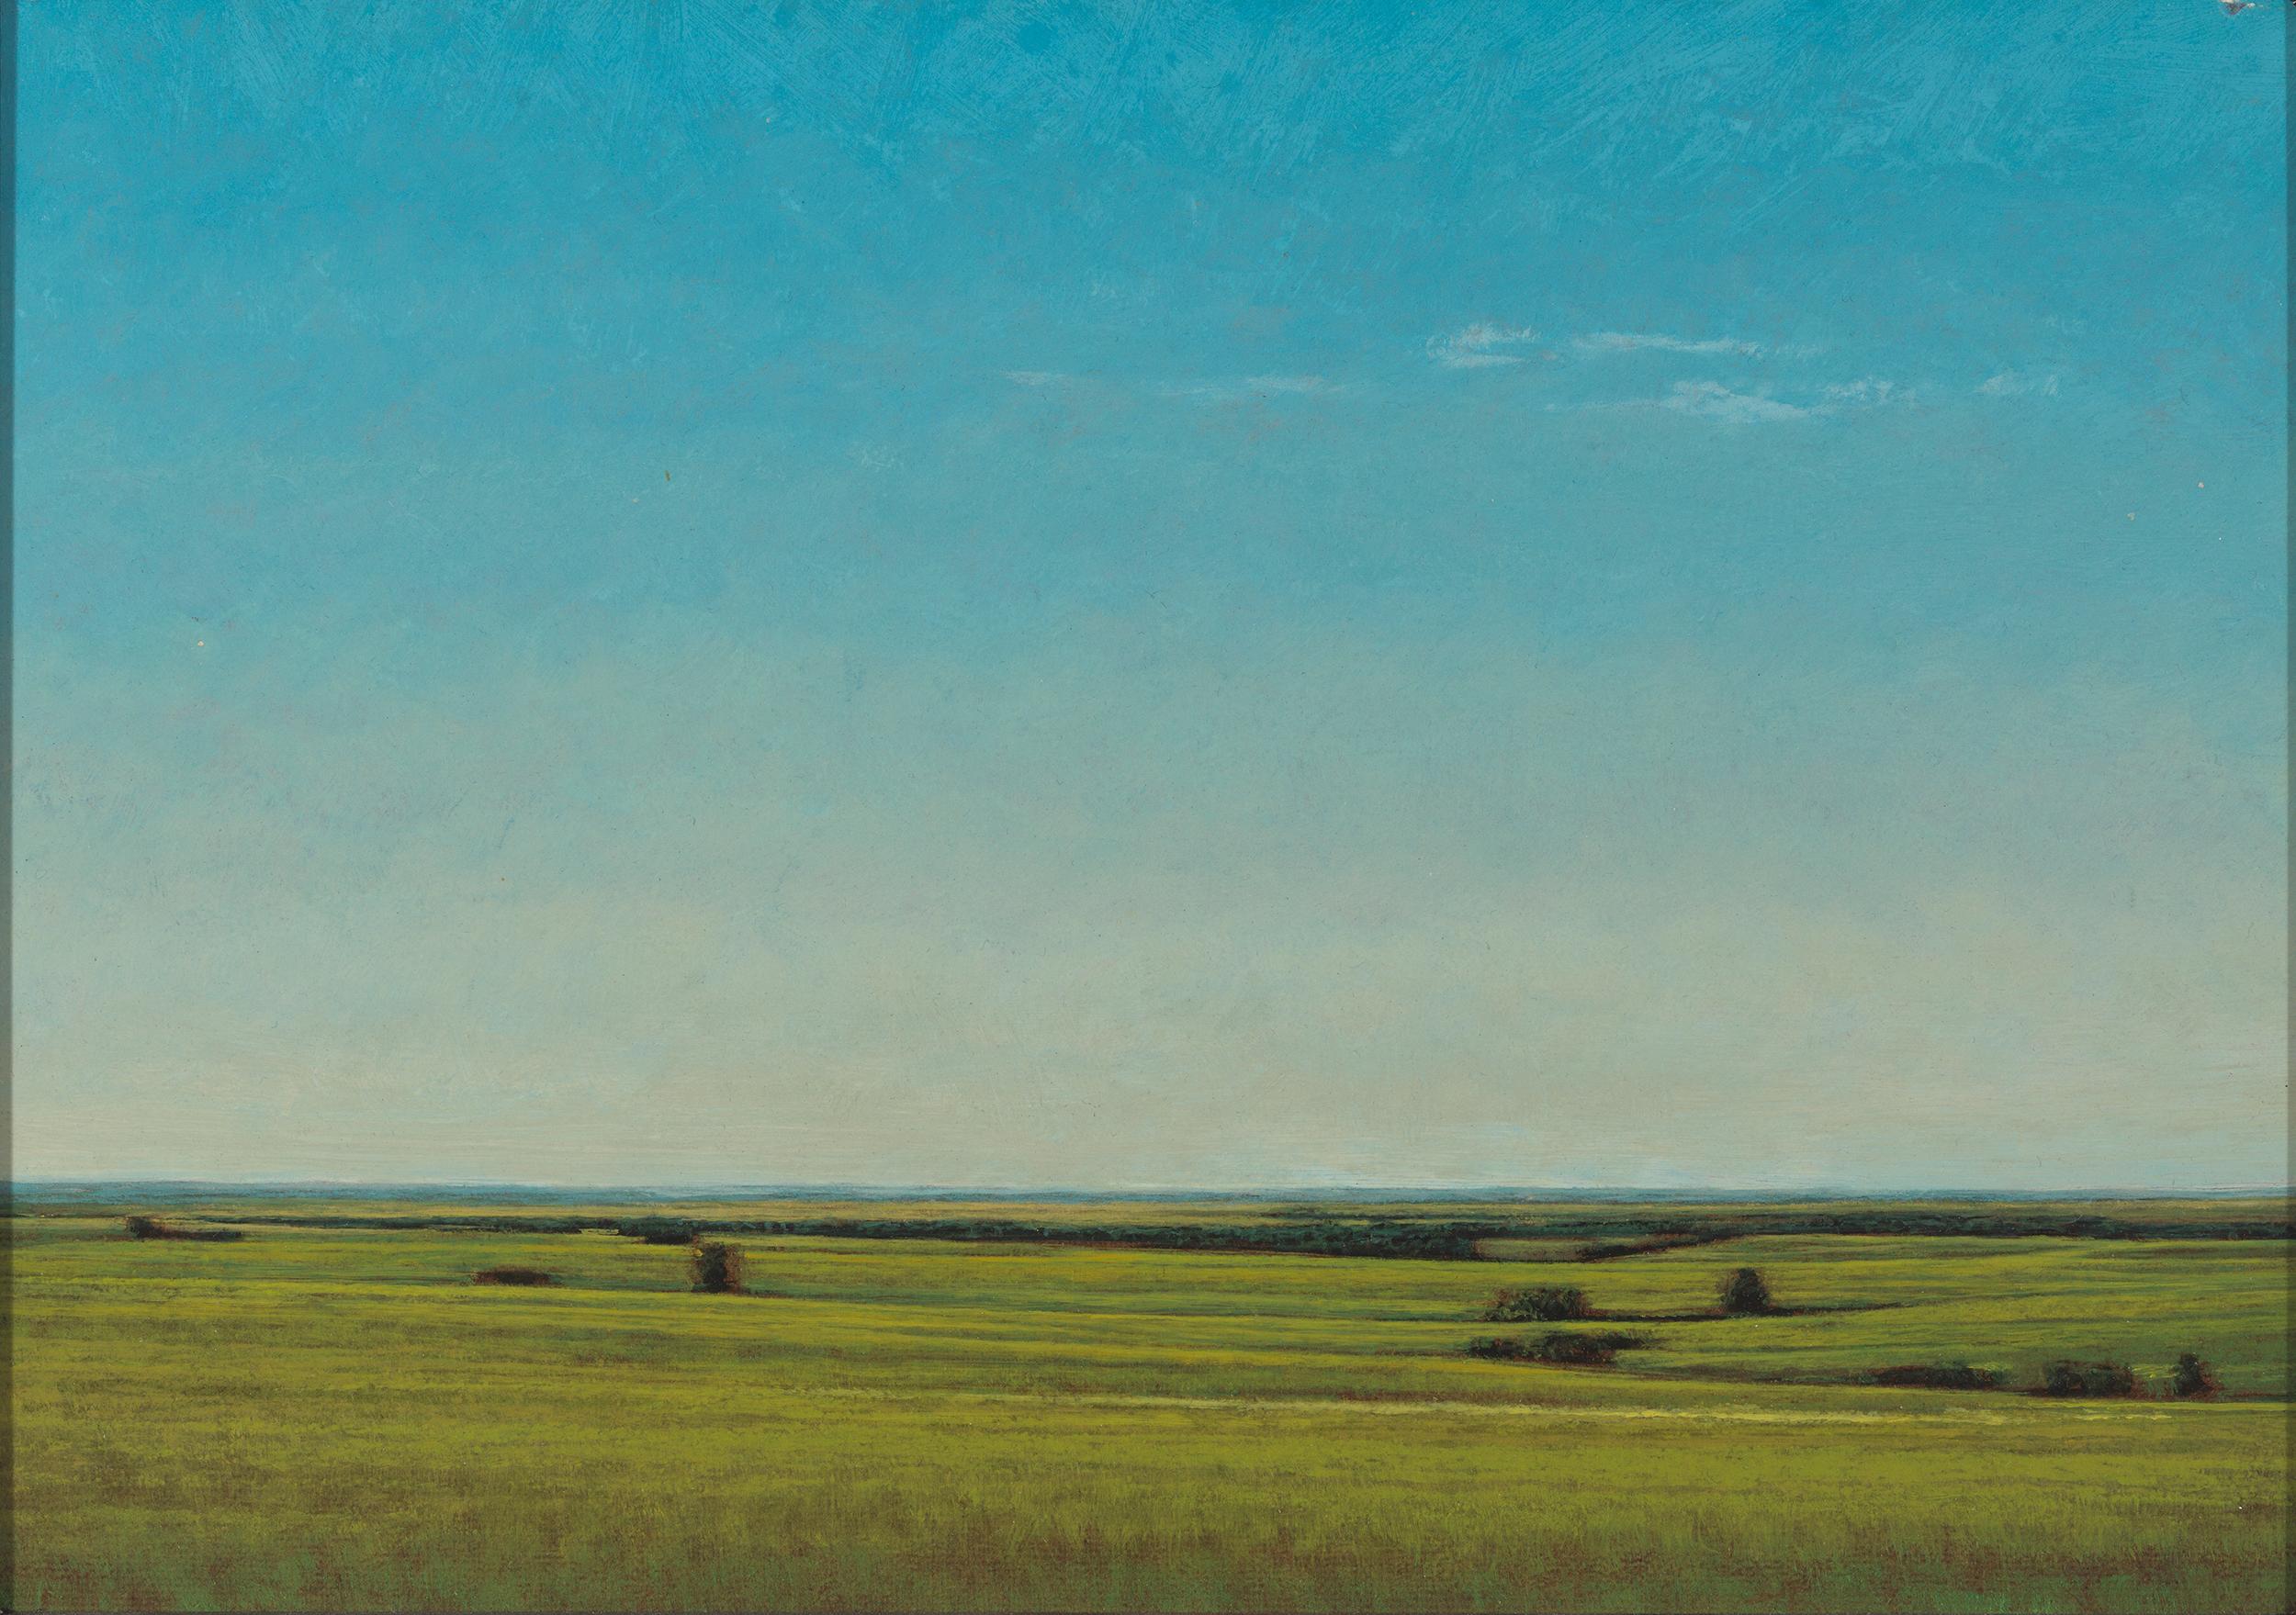 Spätes Nachmittagsabends in der Nähe von Salina, Kansas, heitere Landschaft mit üppigen Grüntönen und Blautönen – Painting von Jeff Aeling